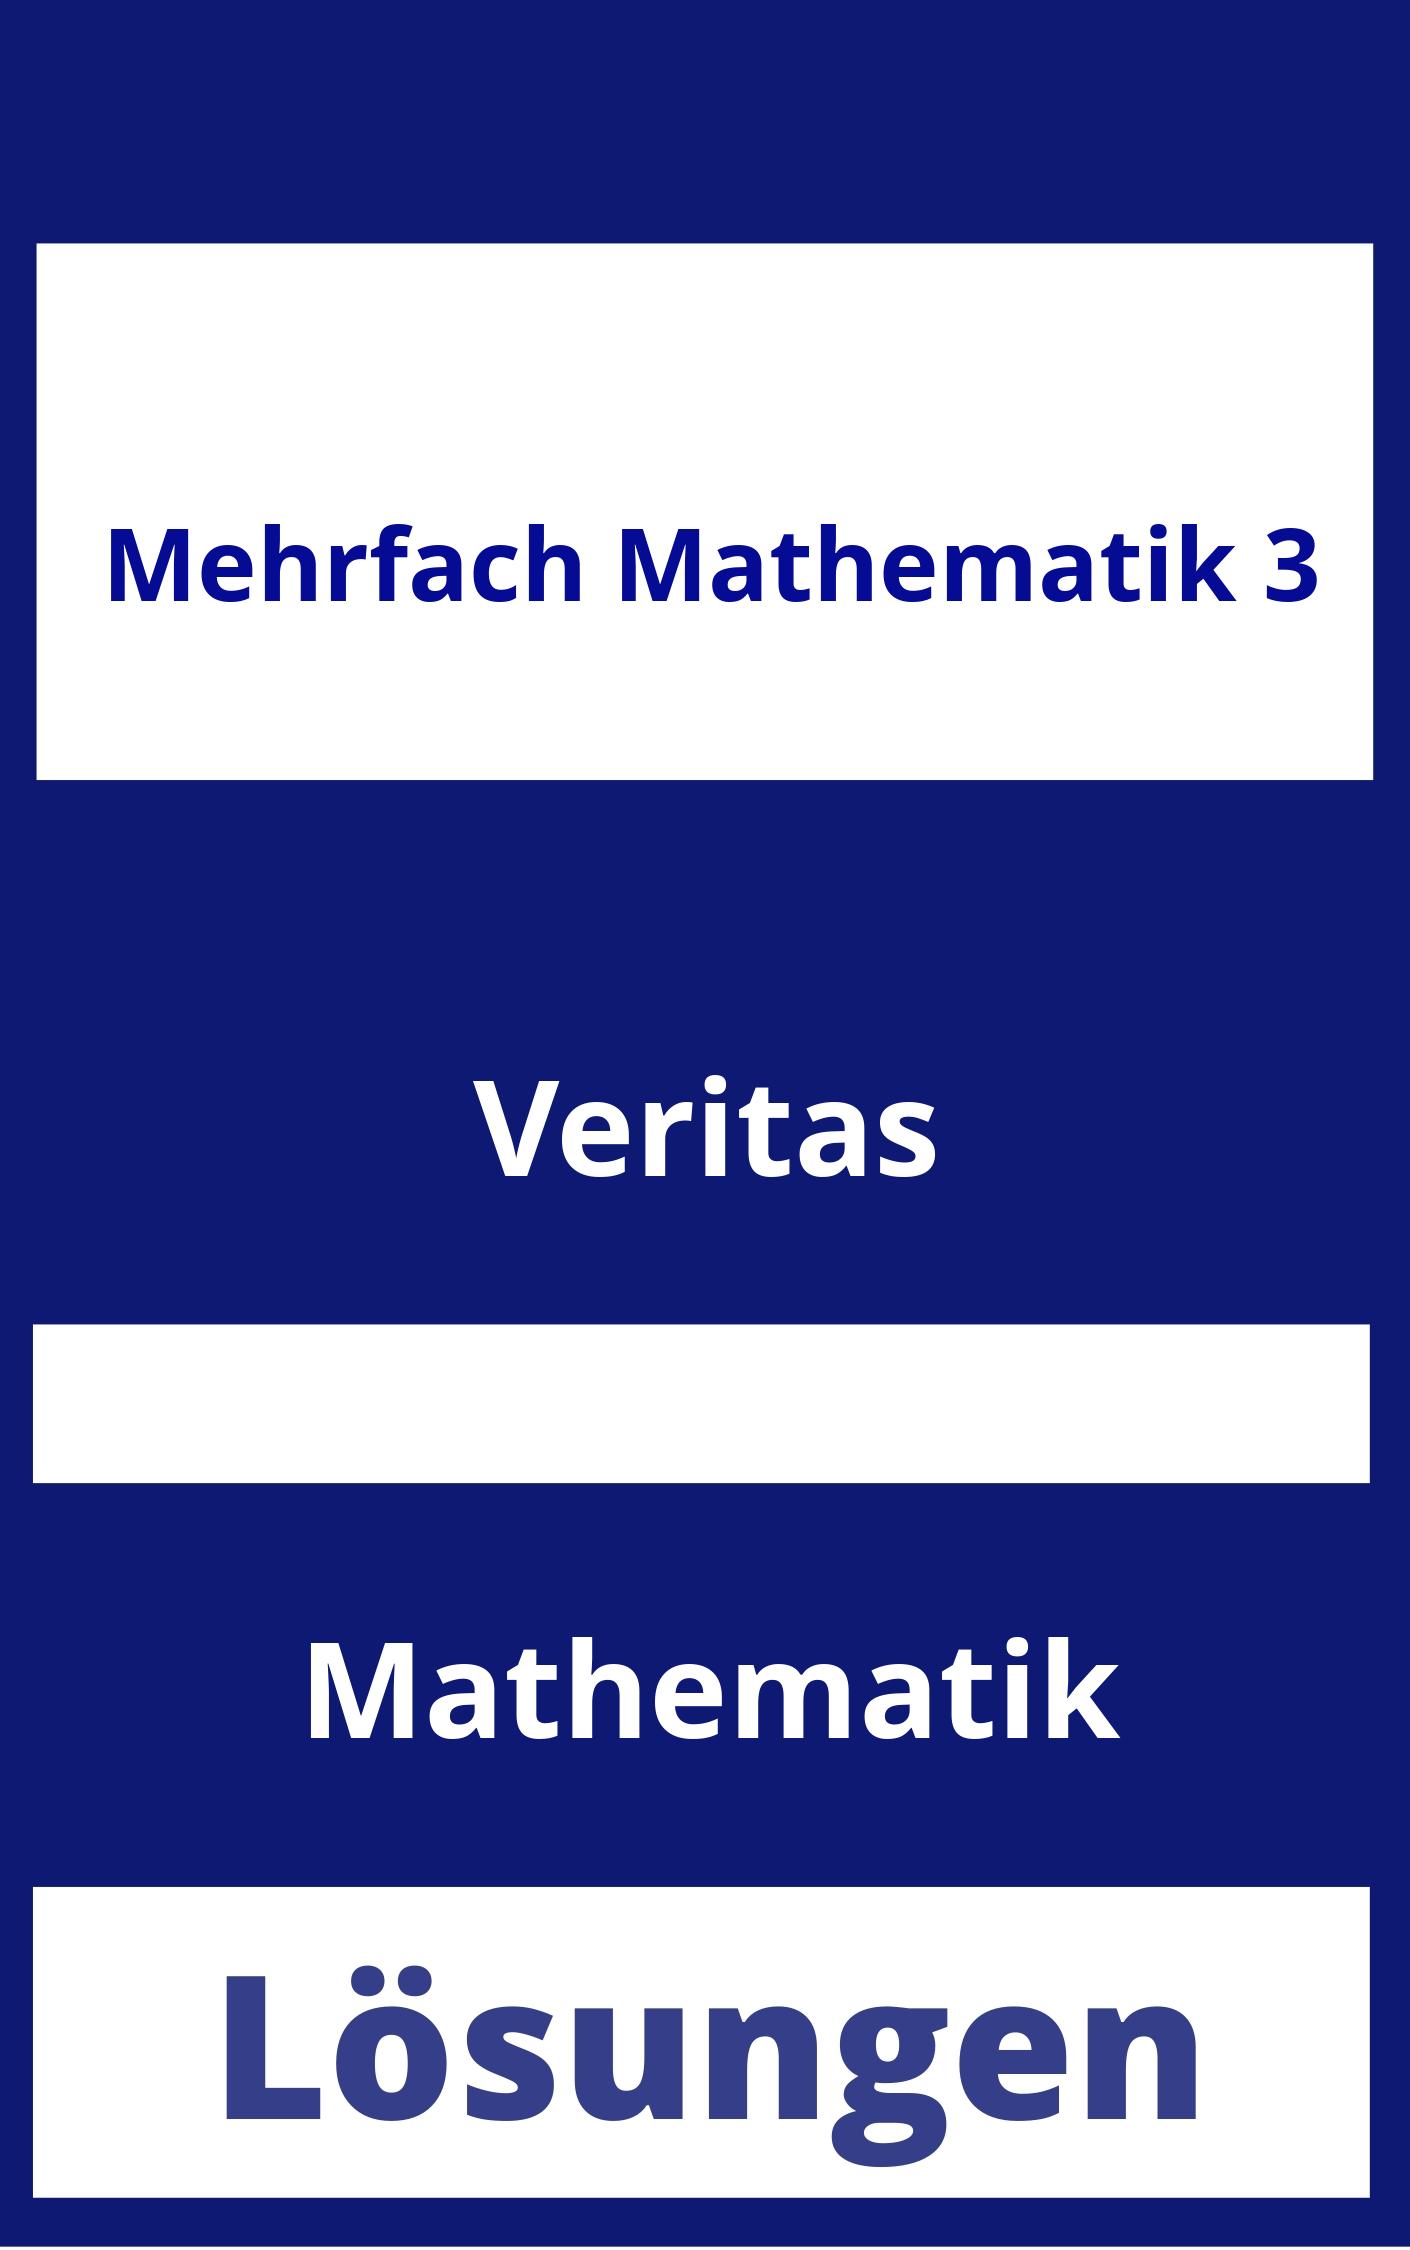 MEHRfach Mathematik 3 Lösungen PDF